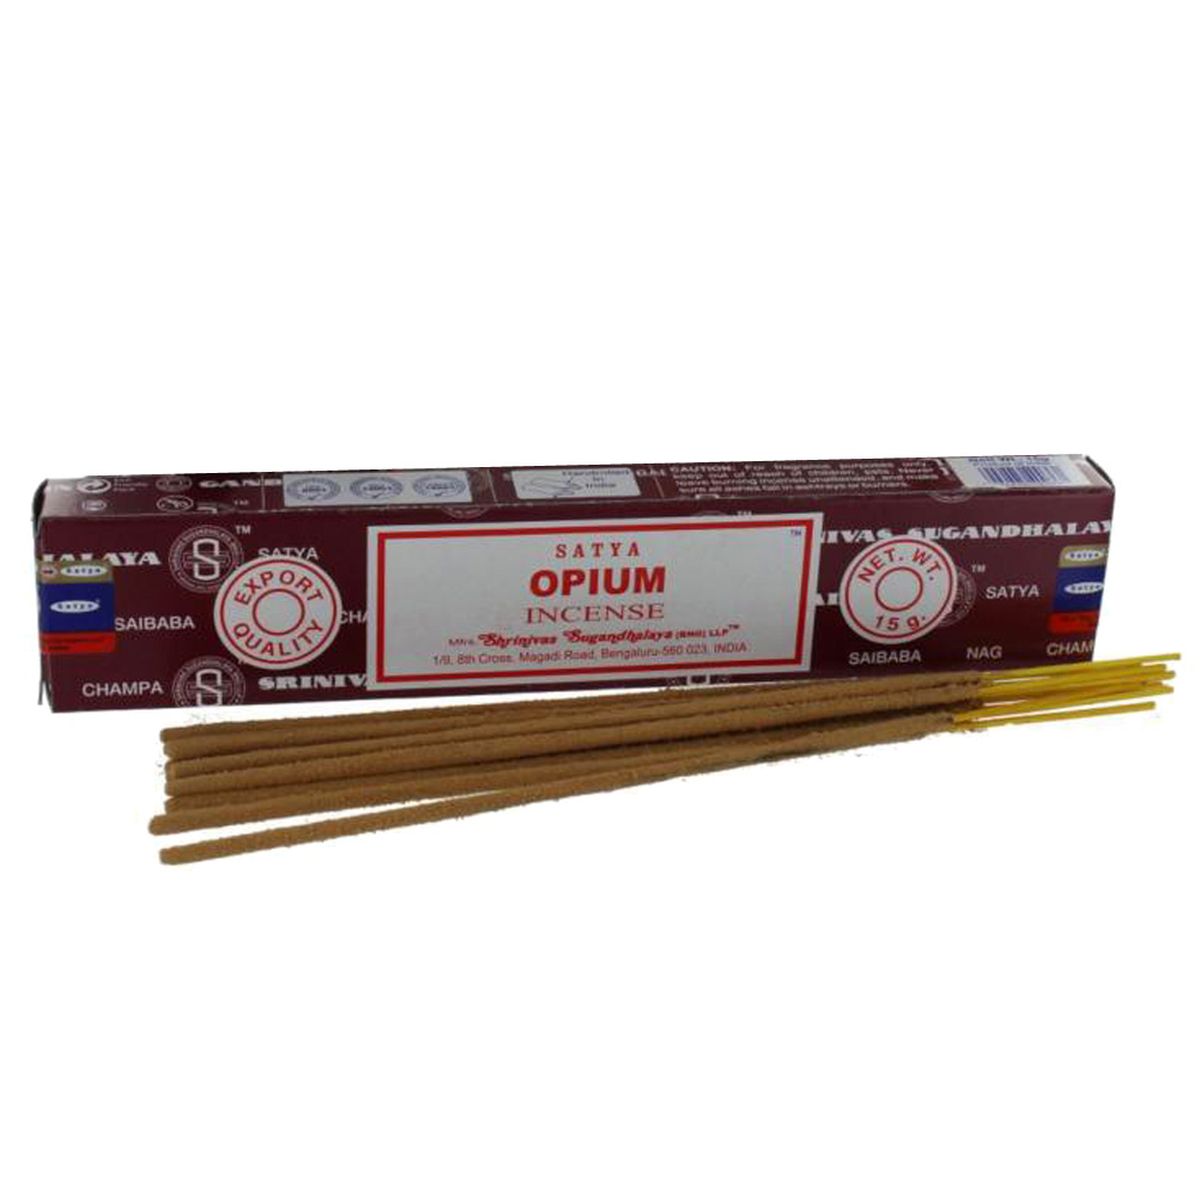 Incense Satya Opium - 12 boxes of 15 grams